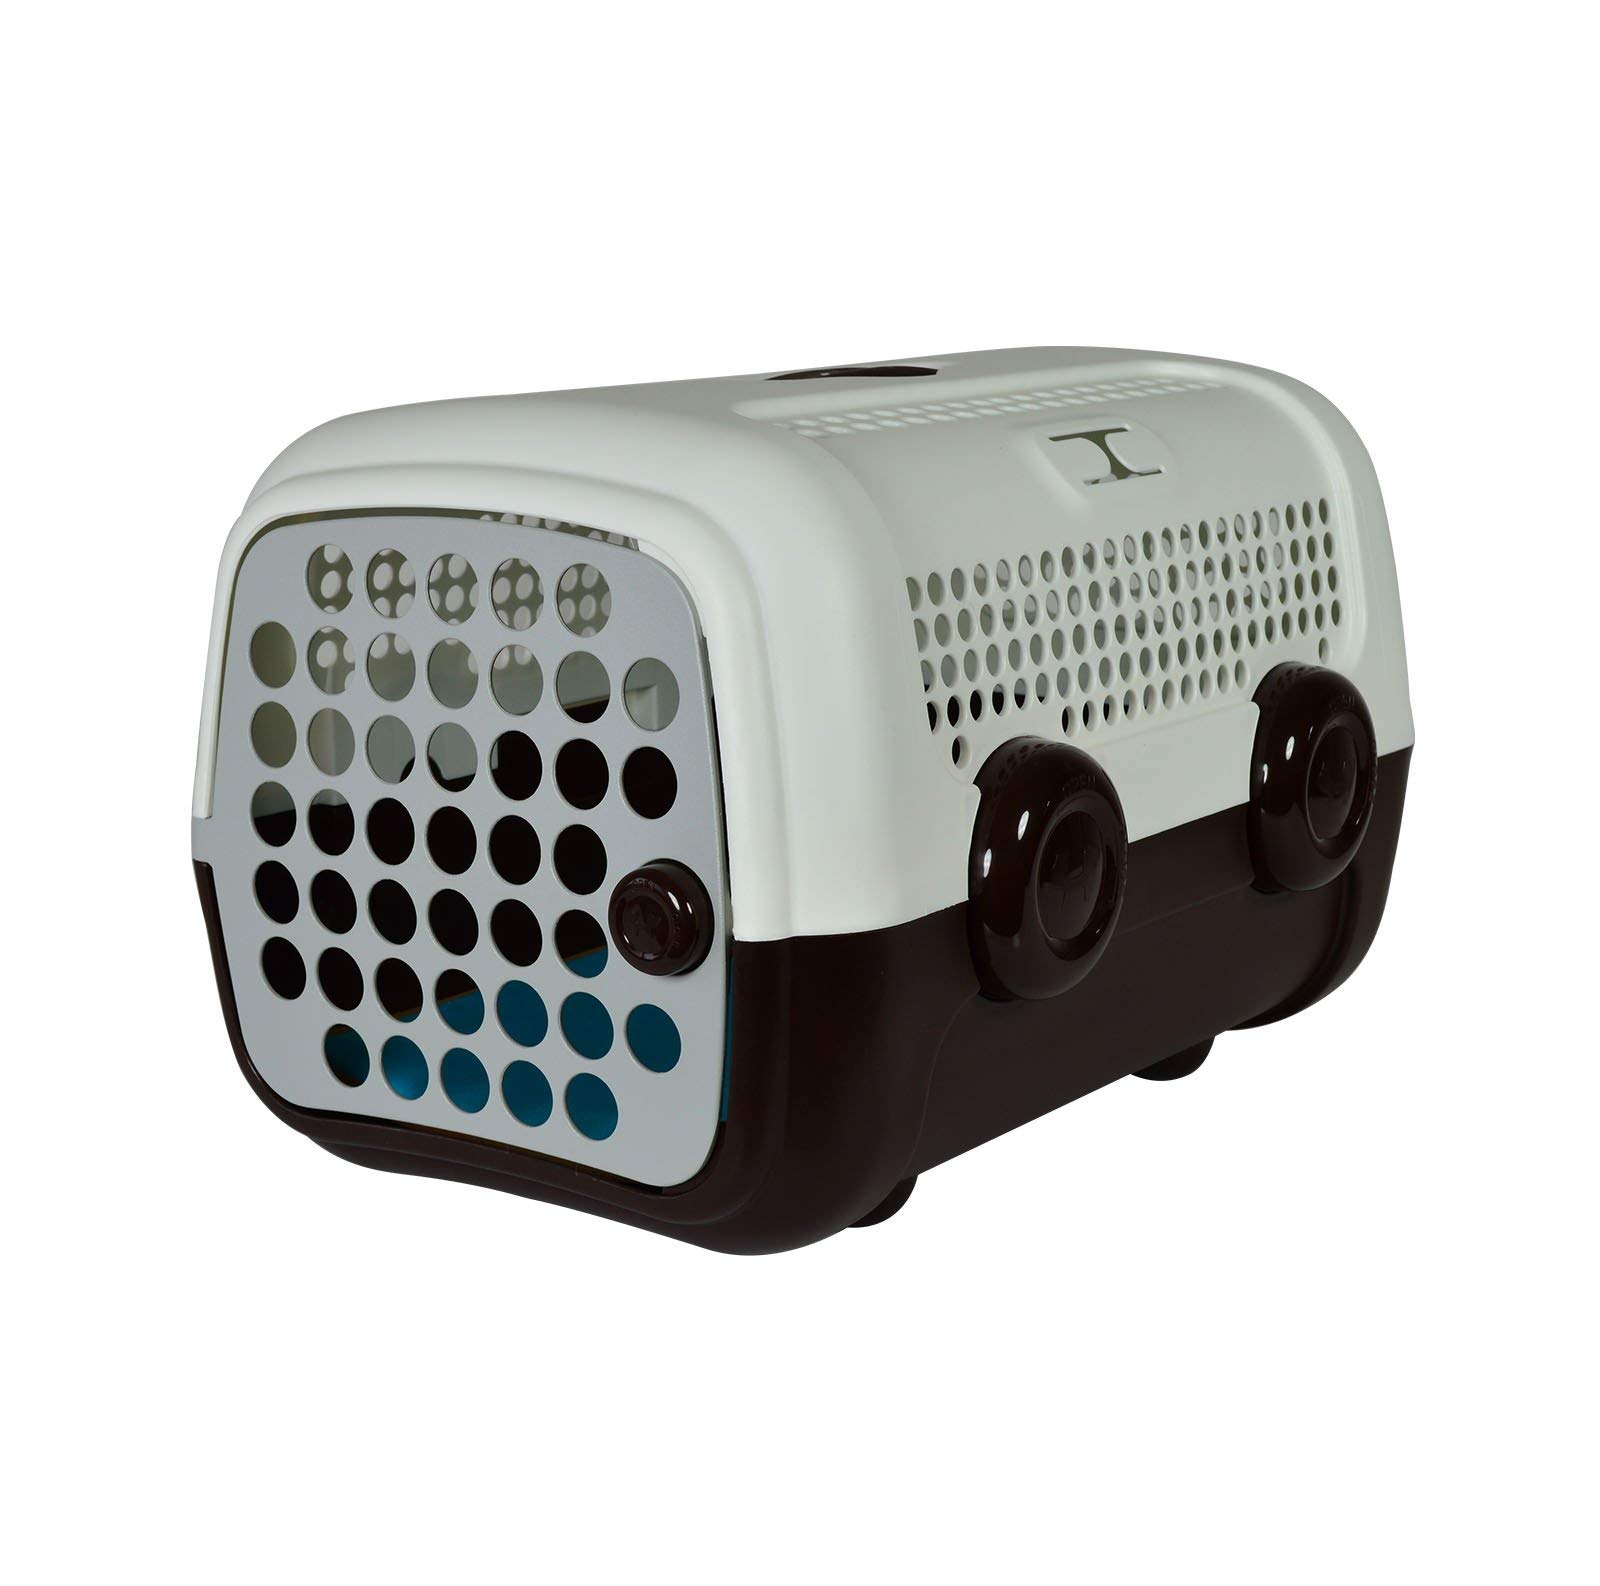 United Pets A.U.T.O. Design Transportbox für kleine Hunde und Katzen, Made in Italy, Weiß/Braun, inklusive Hygieneteppich 51x37x33cm, Reisetransportbox